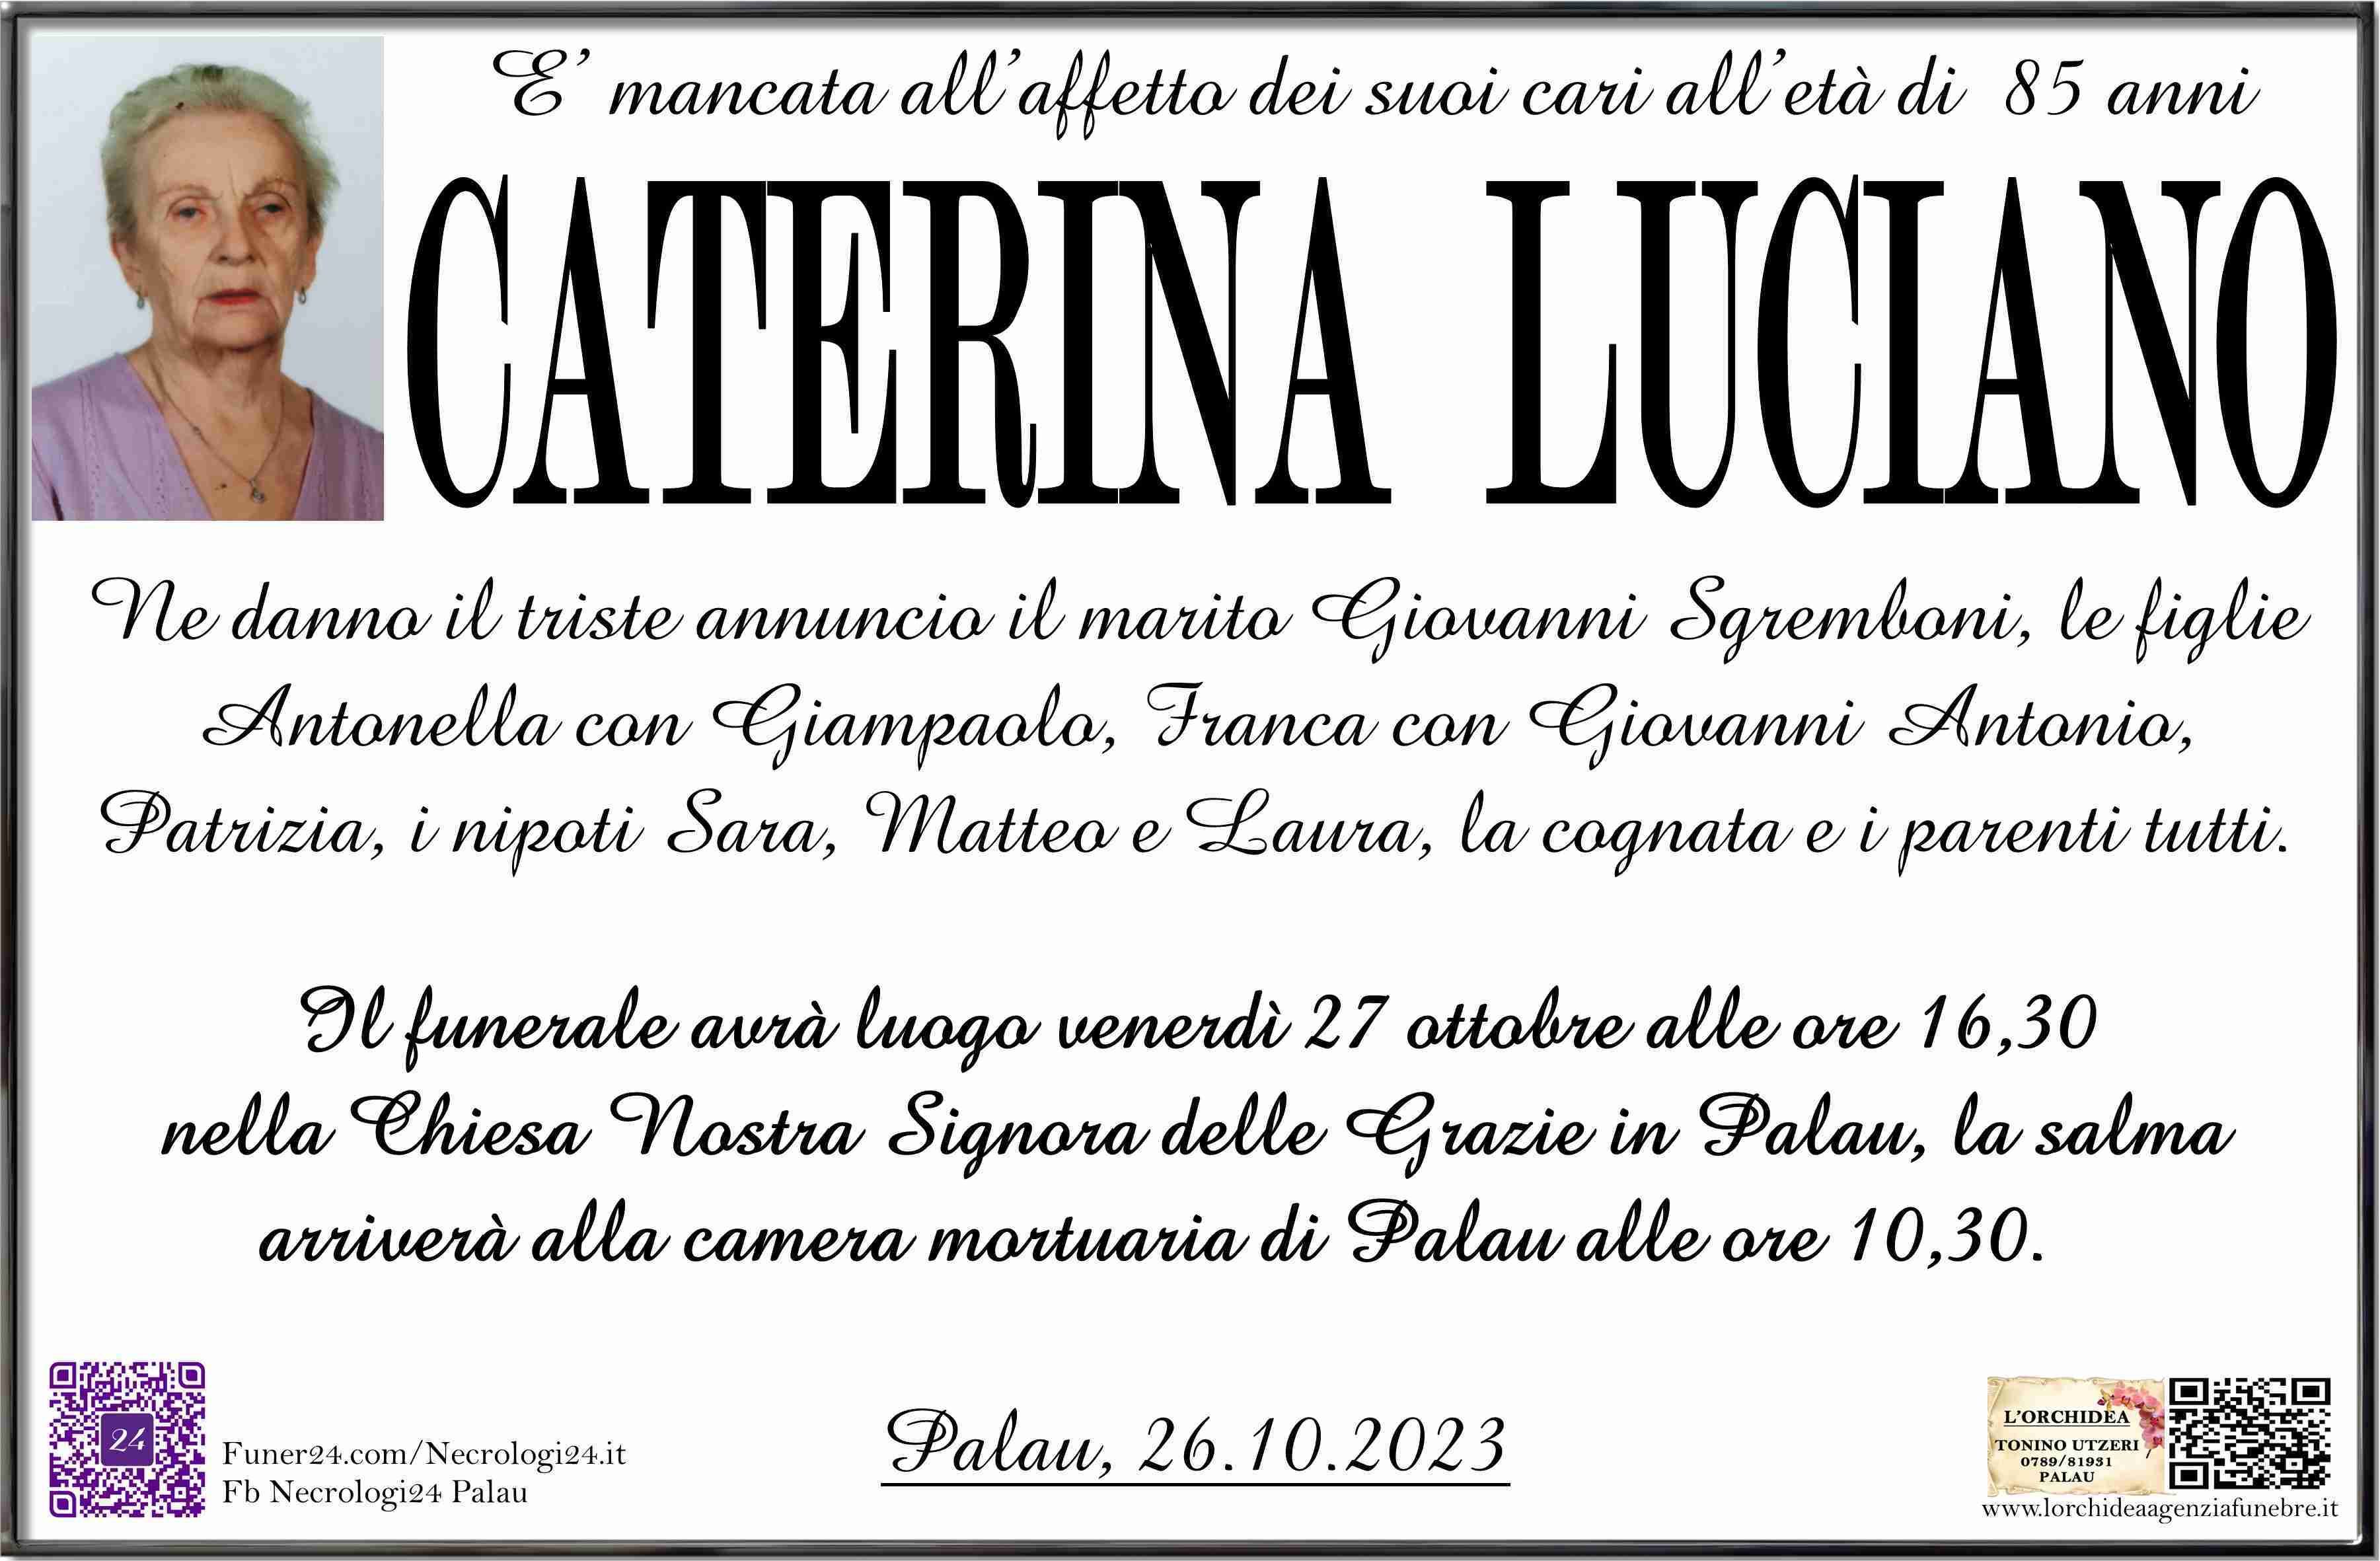 Caterina Luciano